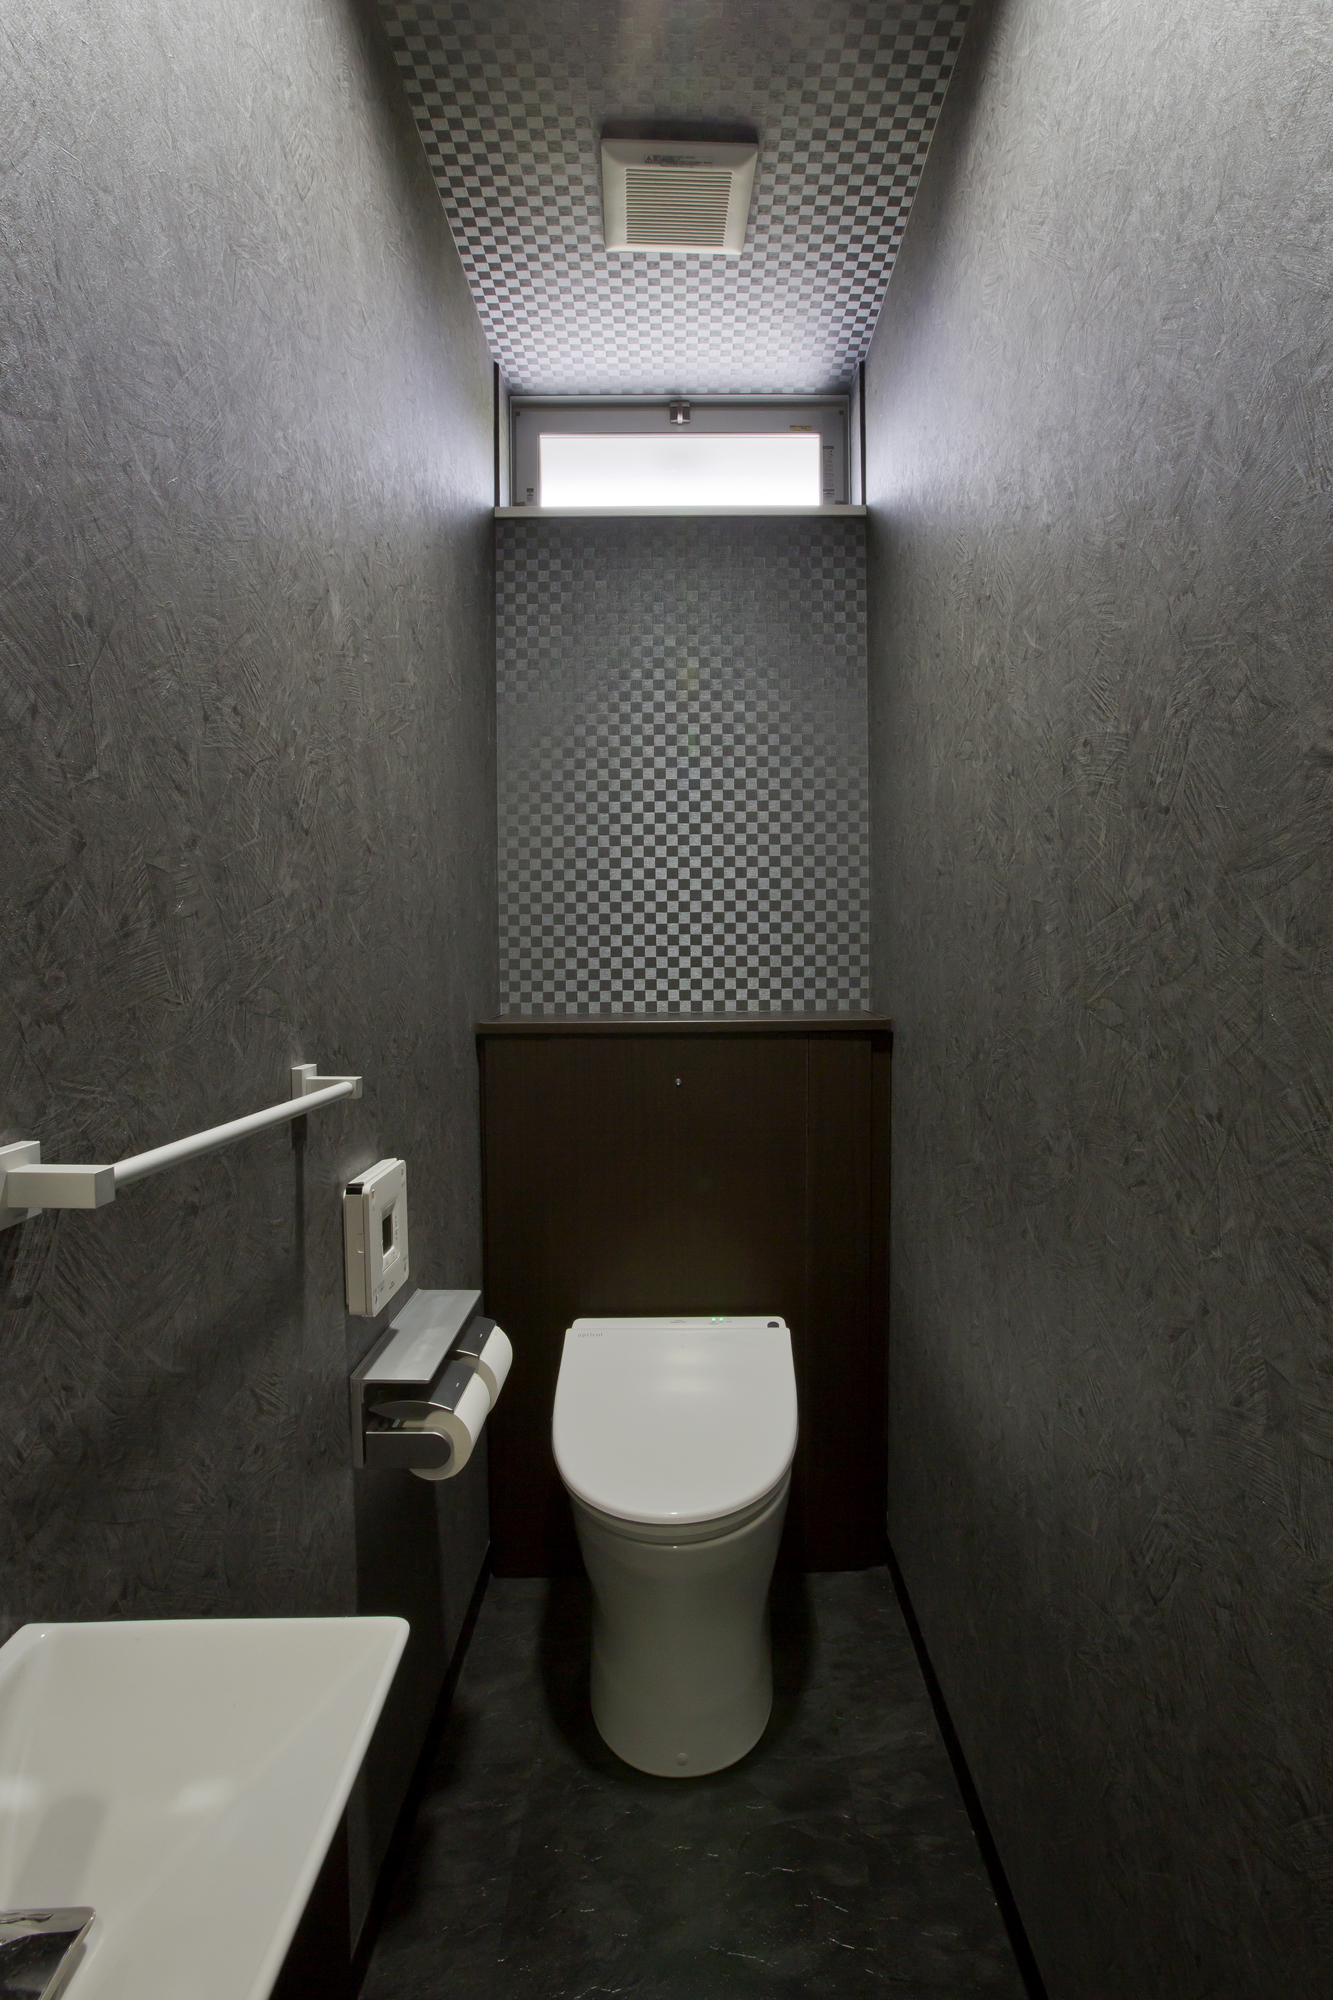 独特のテクスチャーの壁紙を仕様し シックな雰囲気にまとめたトイレ Fevecasa フェブカーサ